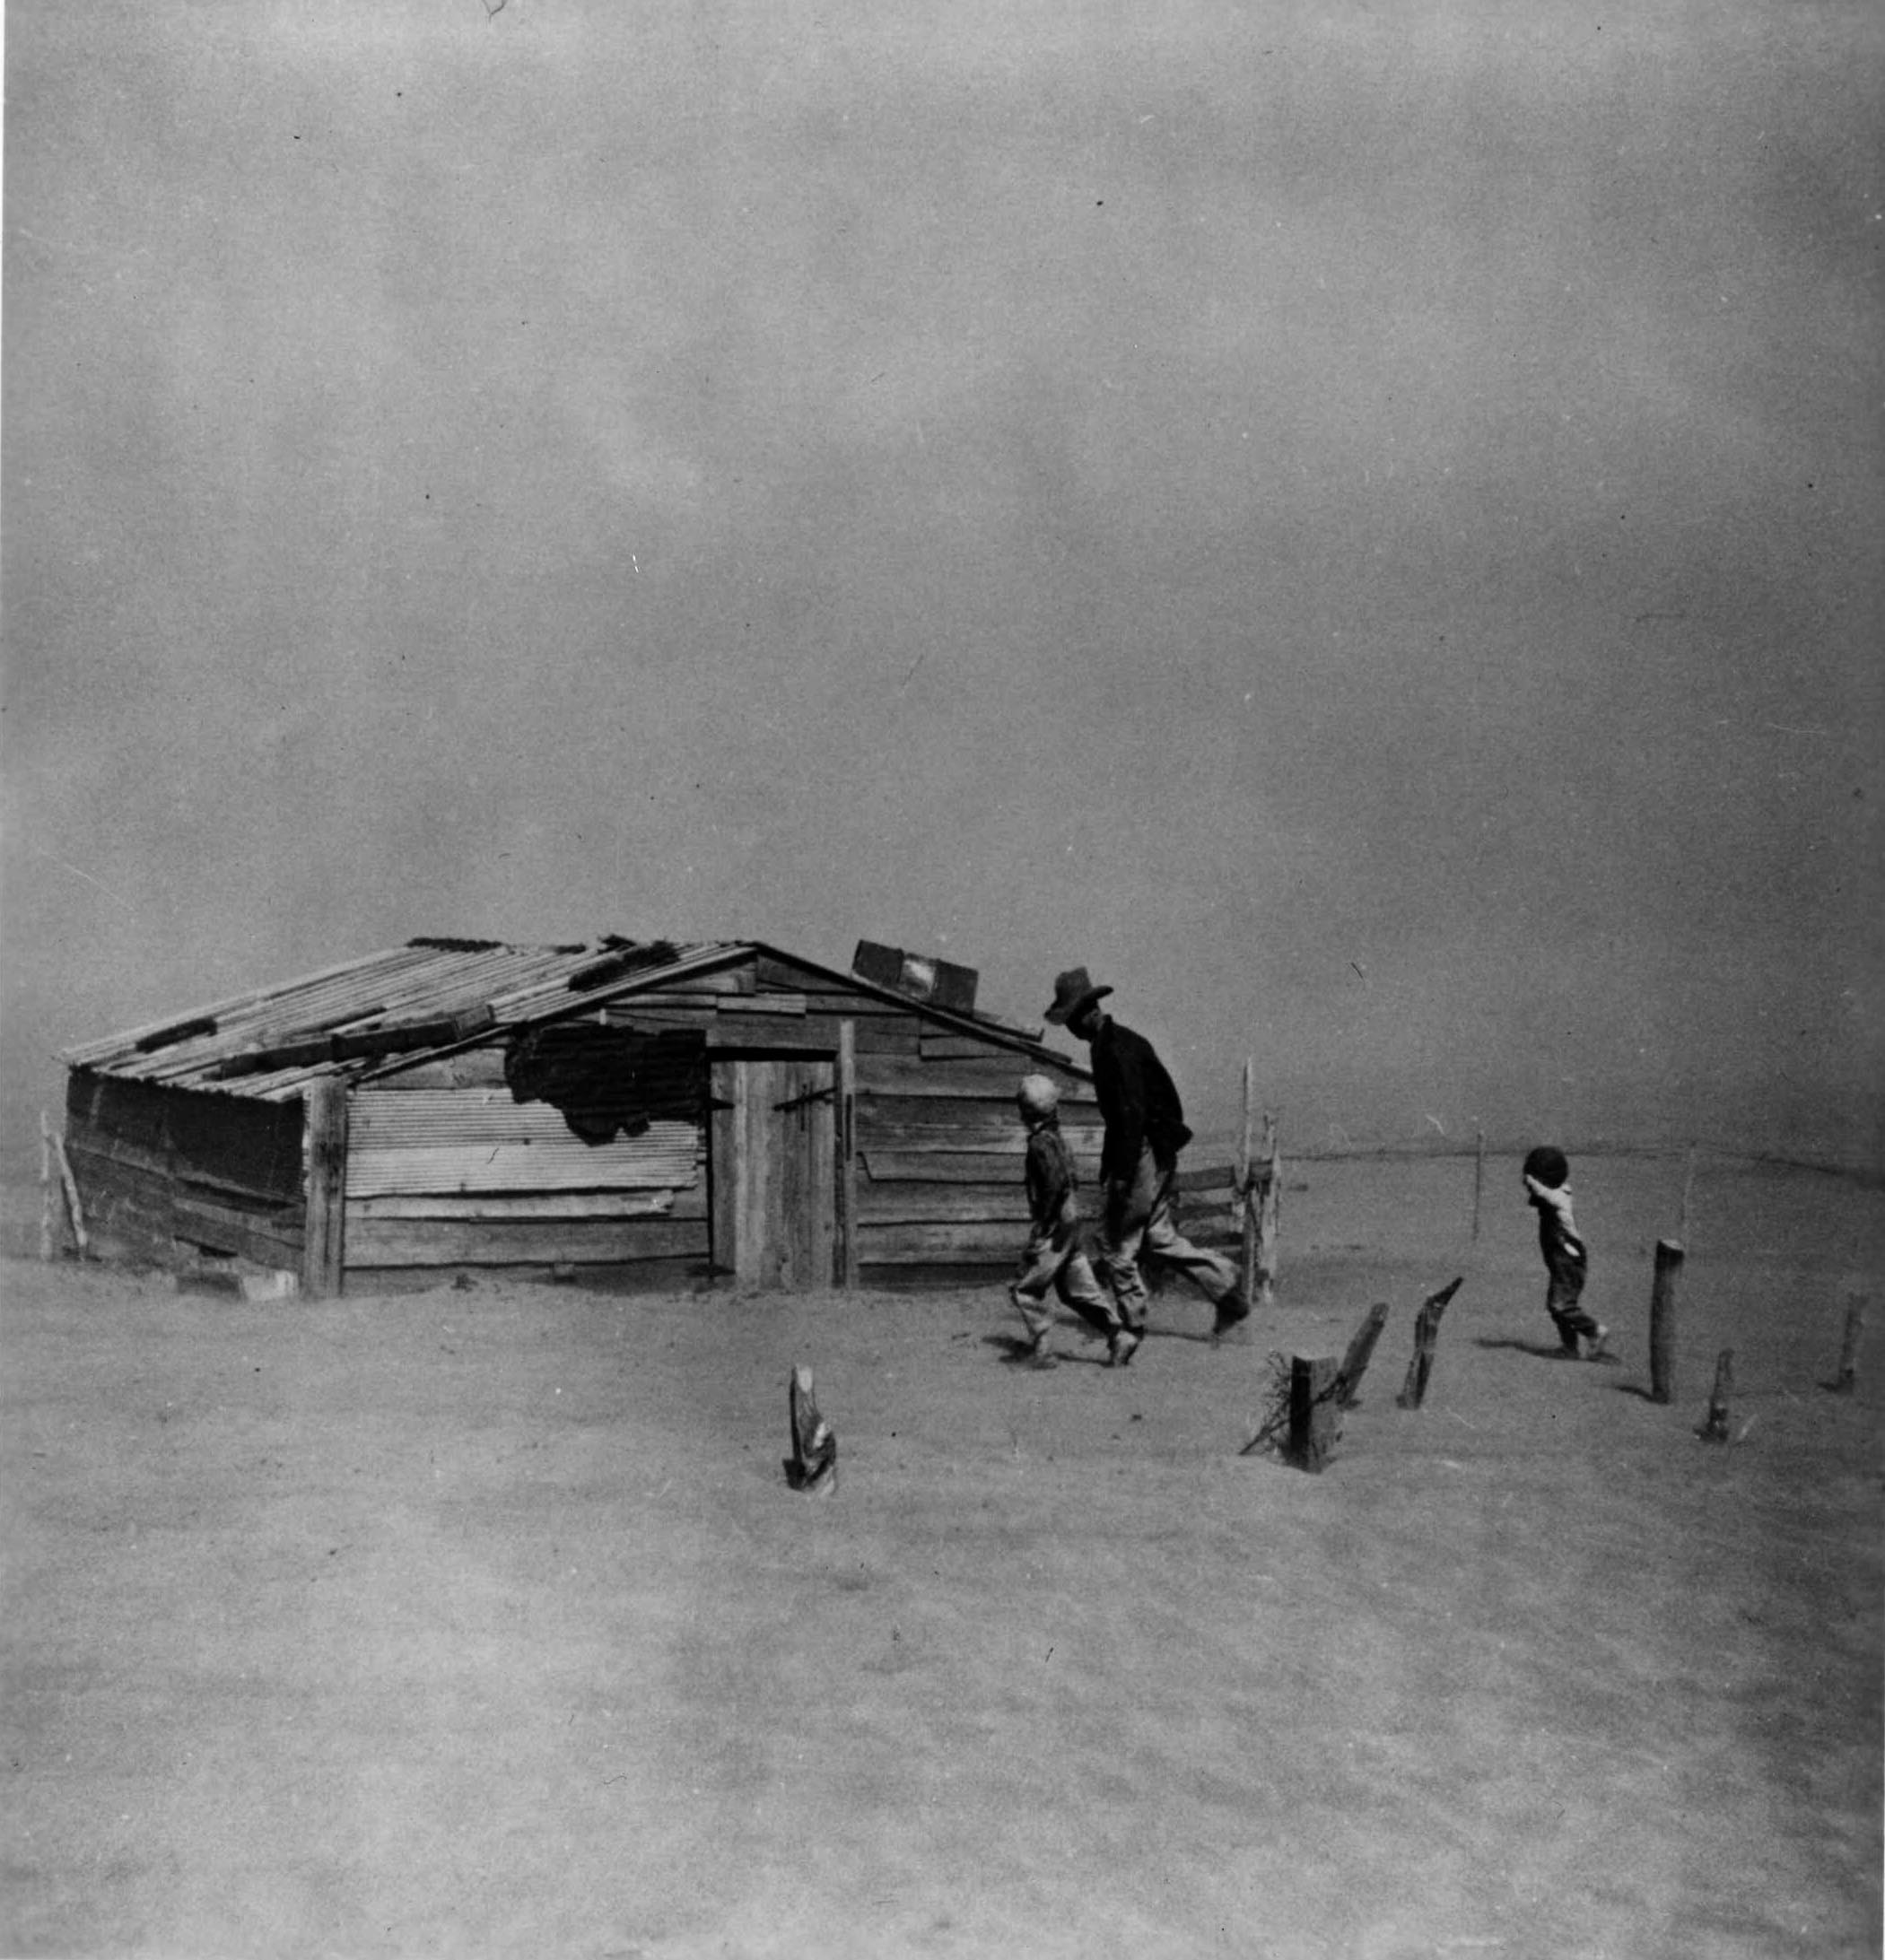 dust bowl black sunday 1935